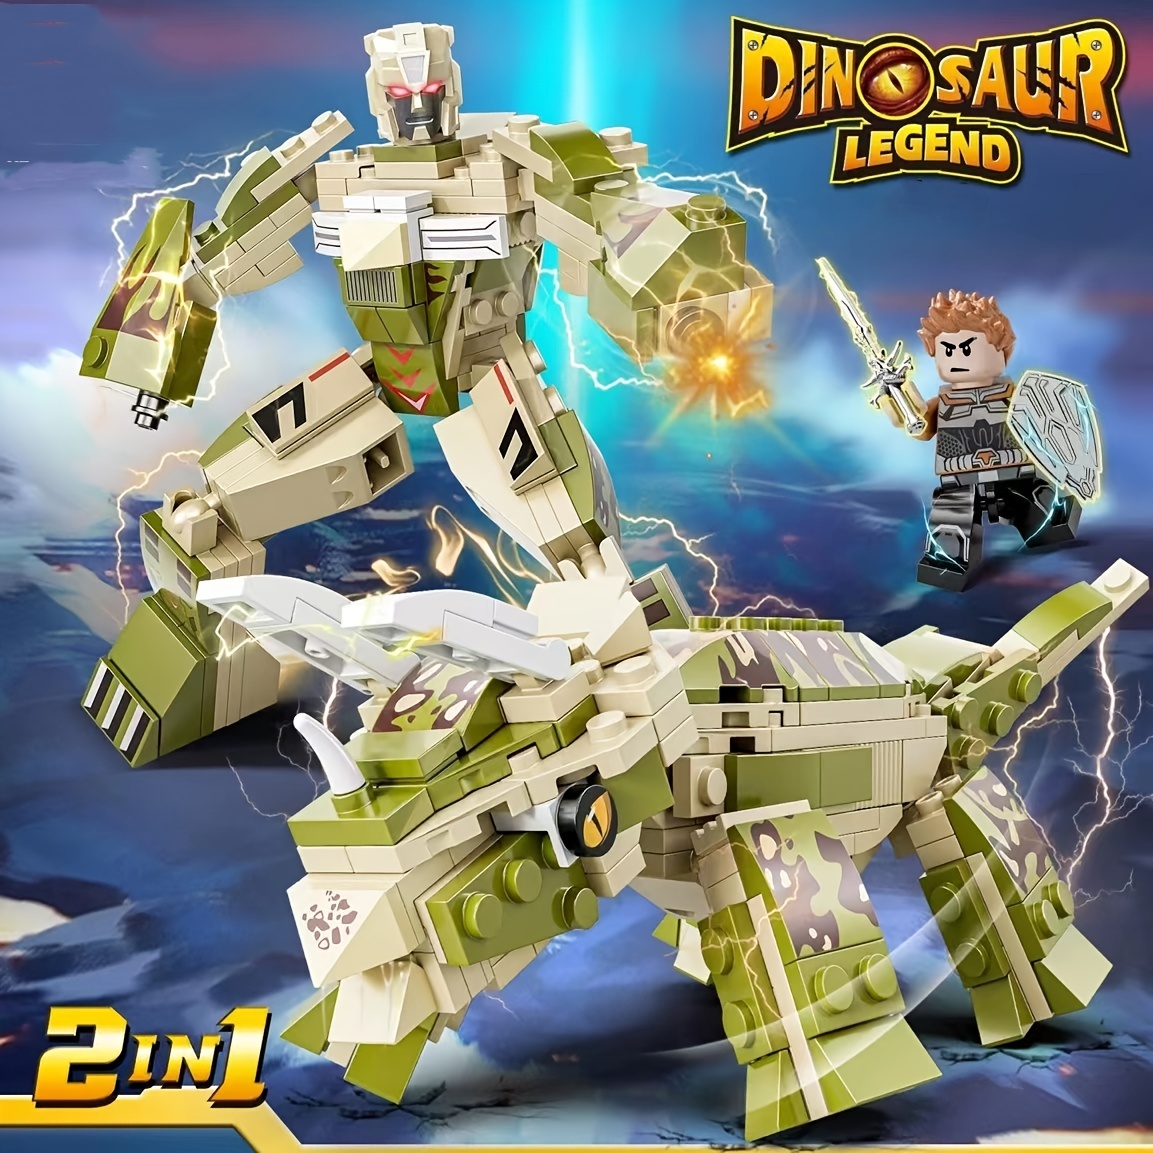 2 ピース/セットジュラ紀恐竜ビルディングブロックおもちゃ